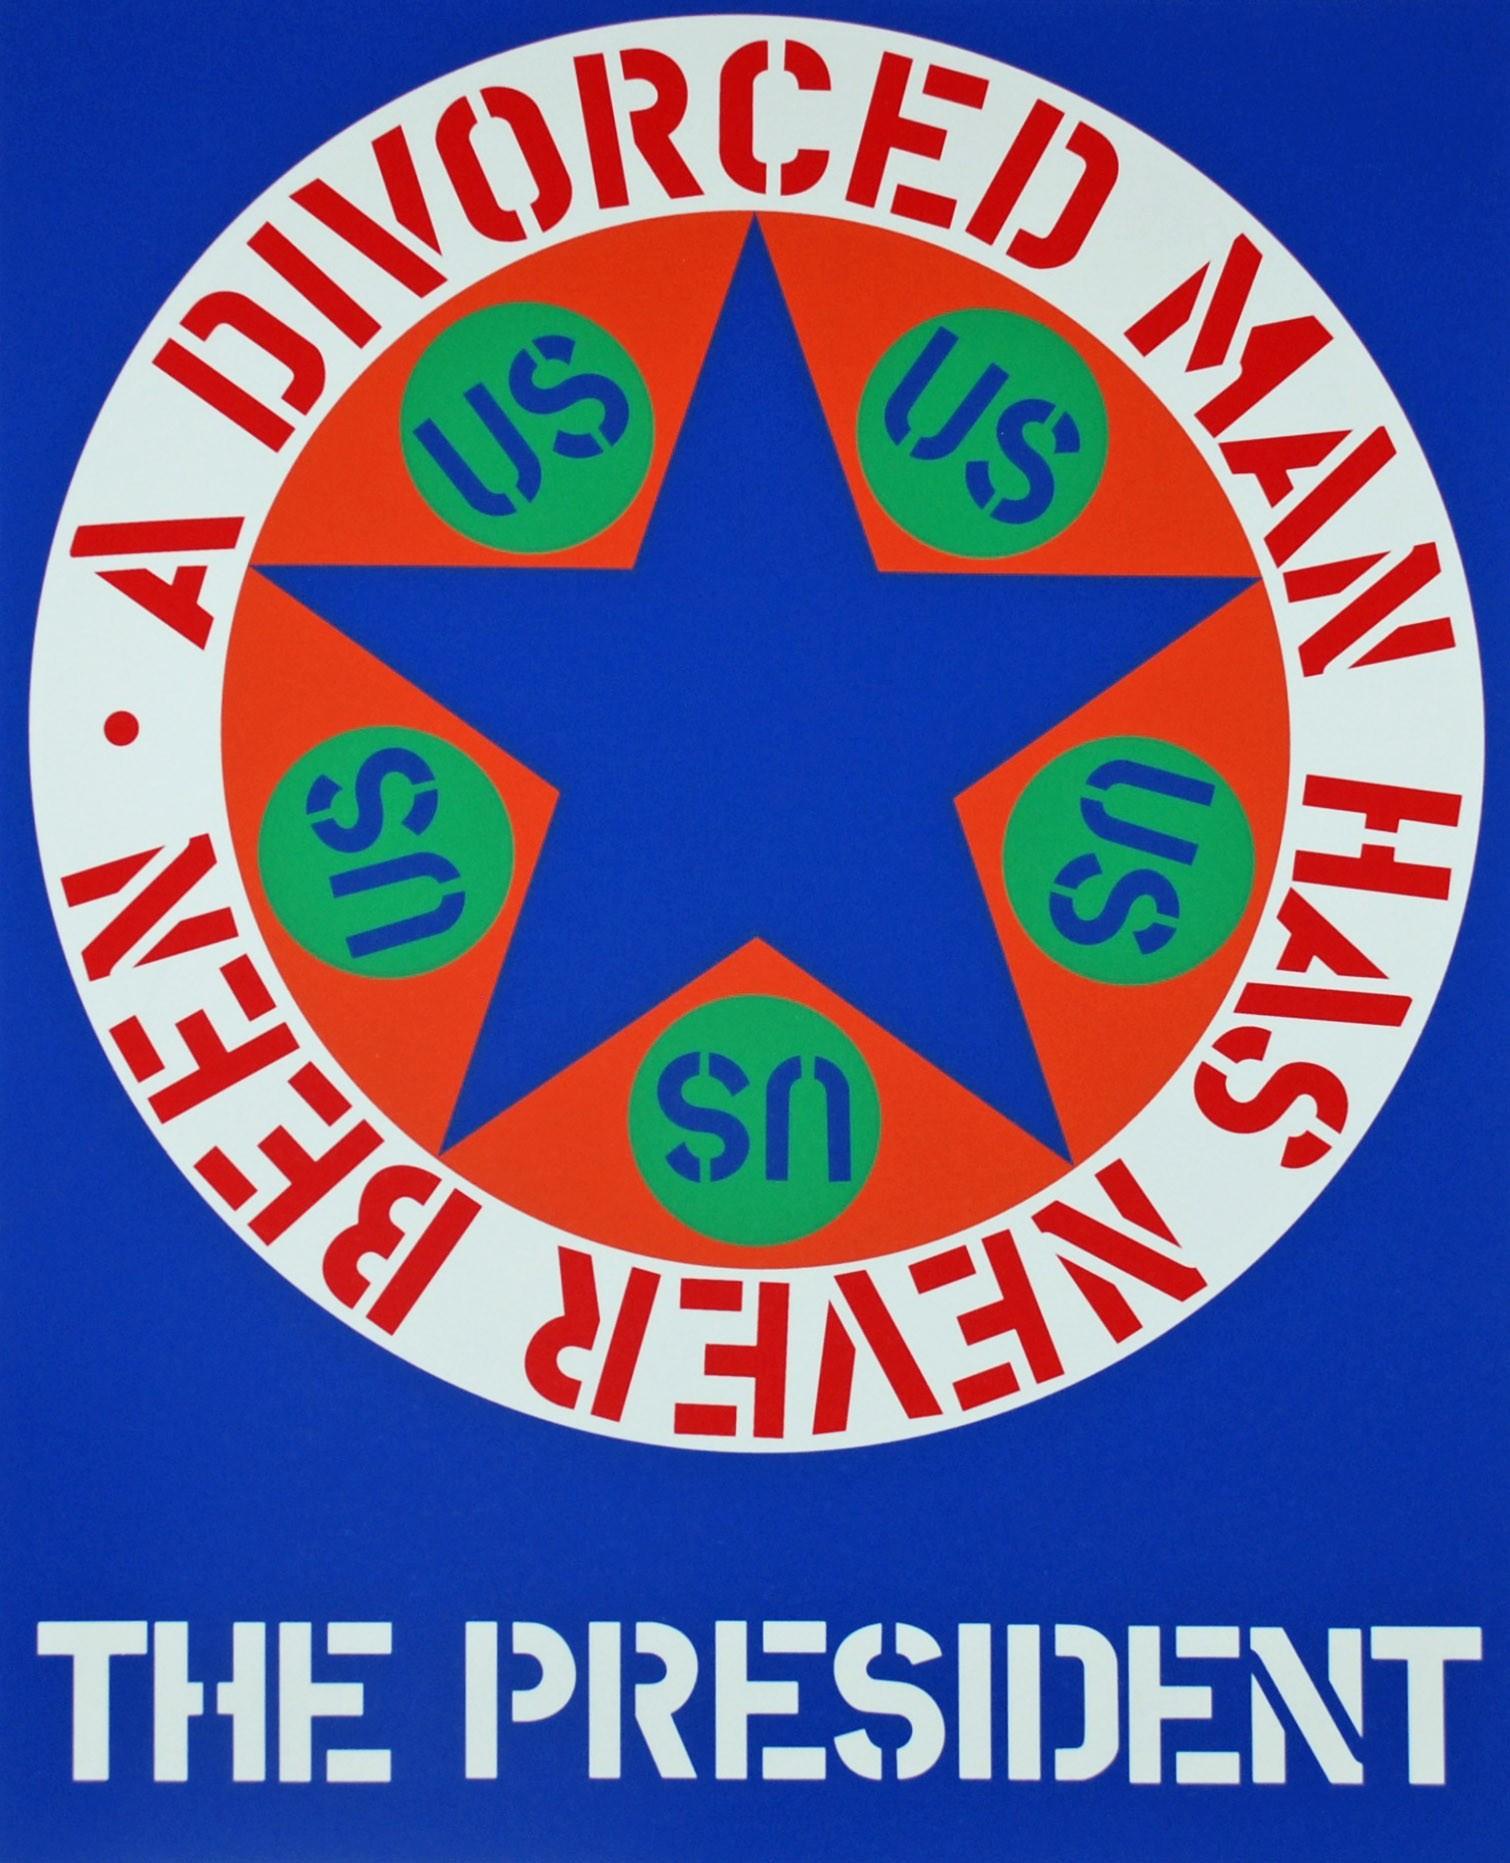 Der Präsident – Print von Robert Indiana